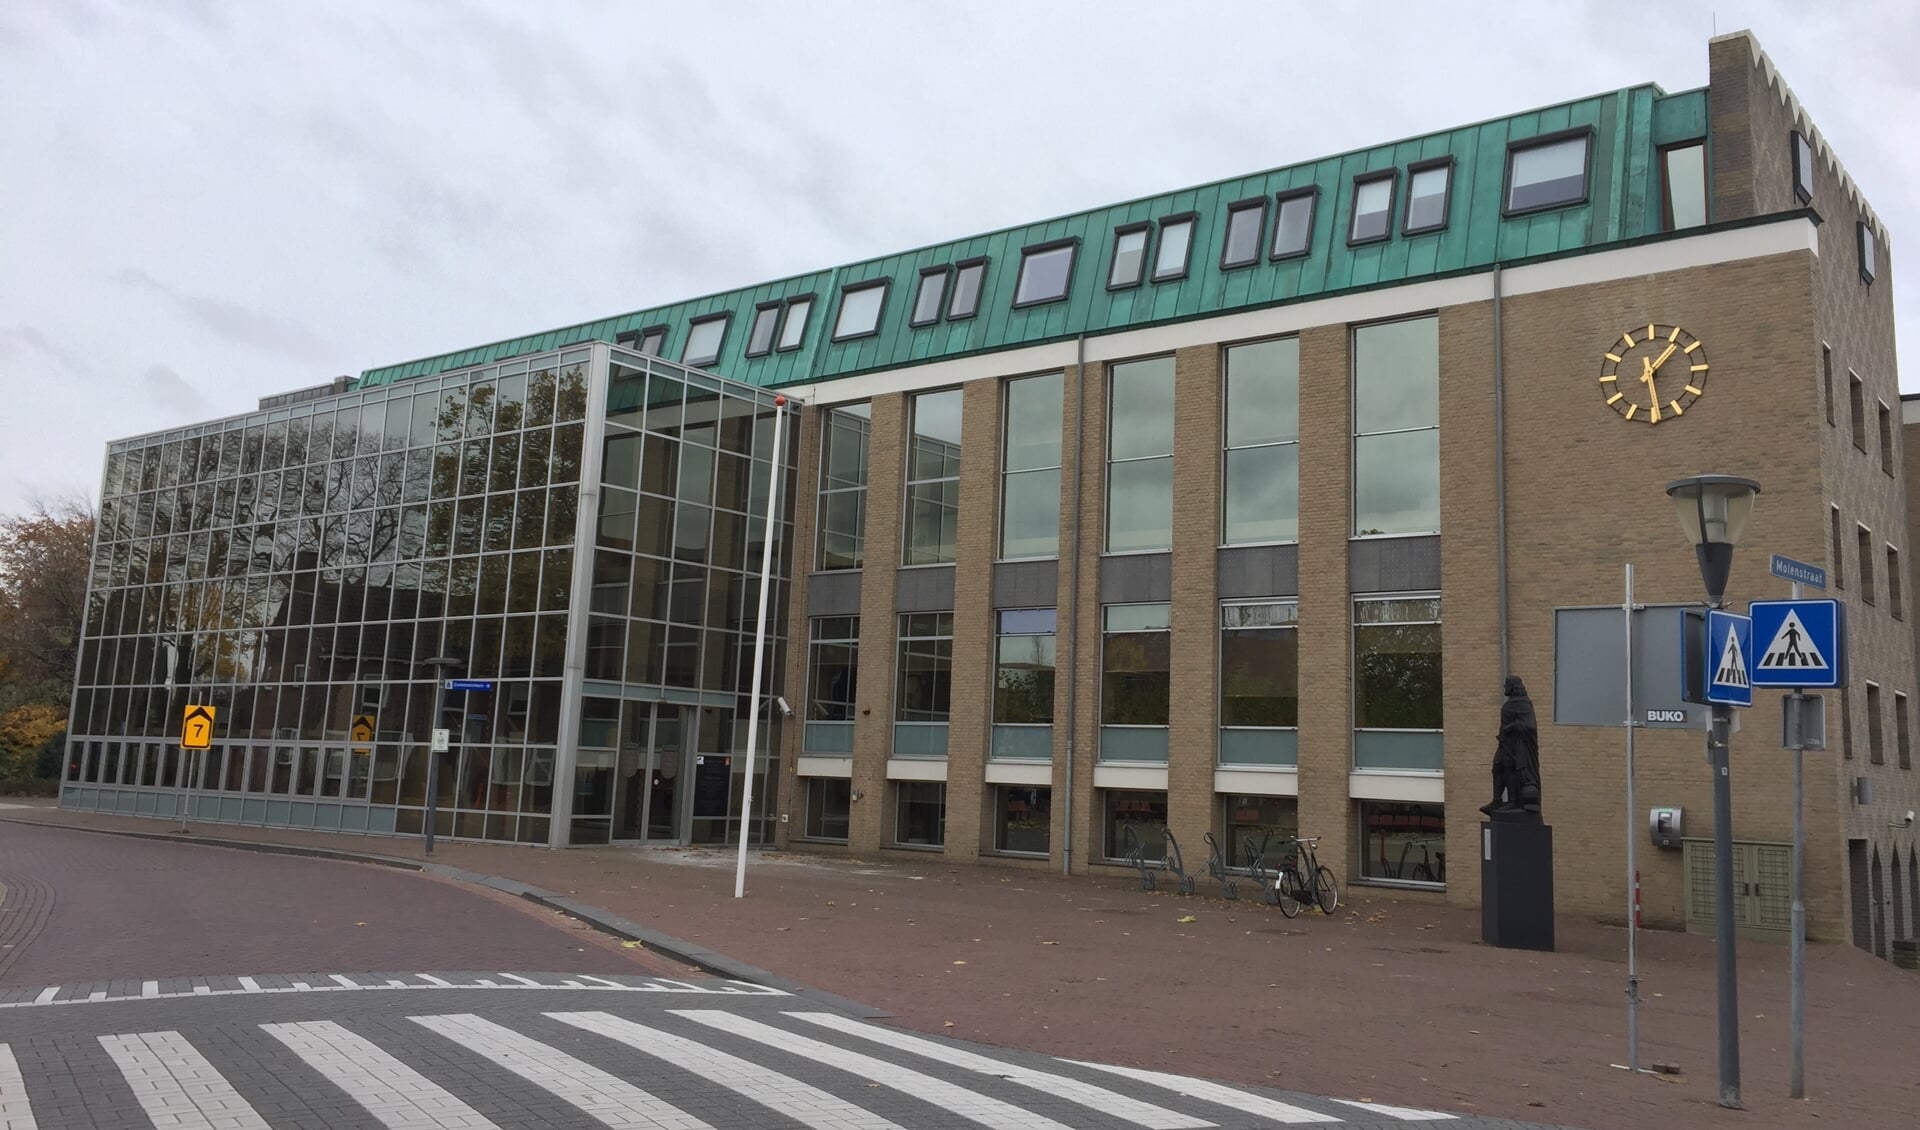 De gemeenteraad van Cuijk stemde maandagavond in met de begroting voor 2019, inclusief een OZB-verhoging van dertig procent.